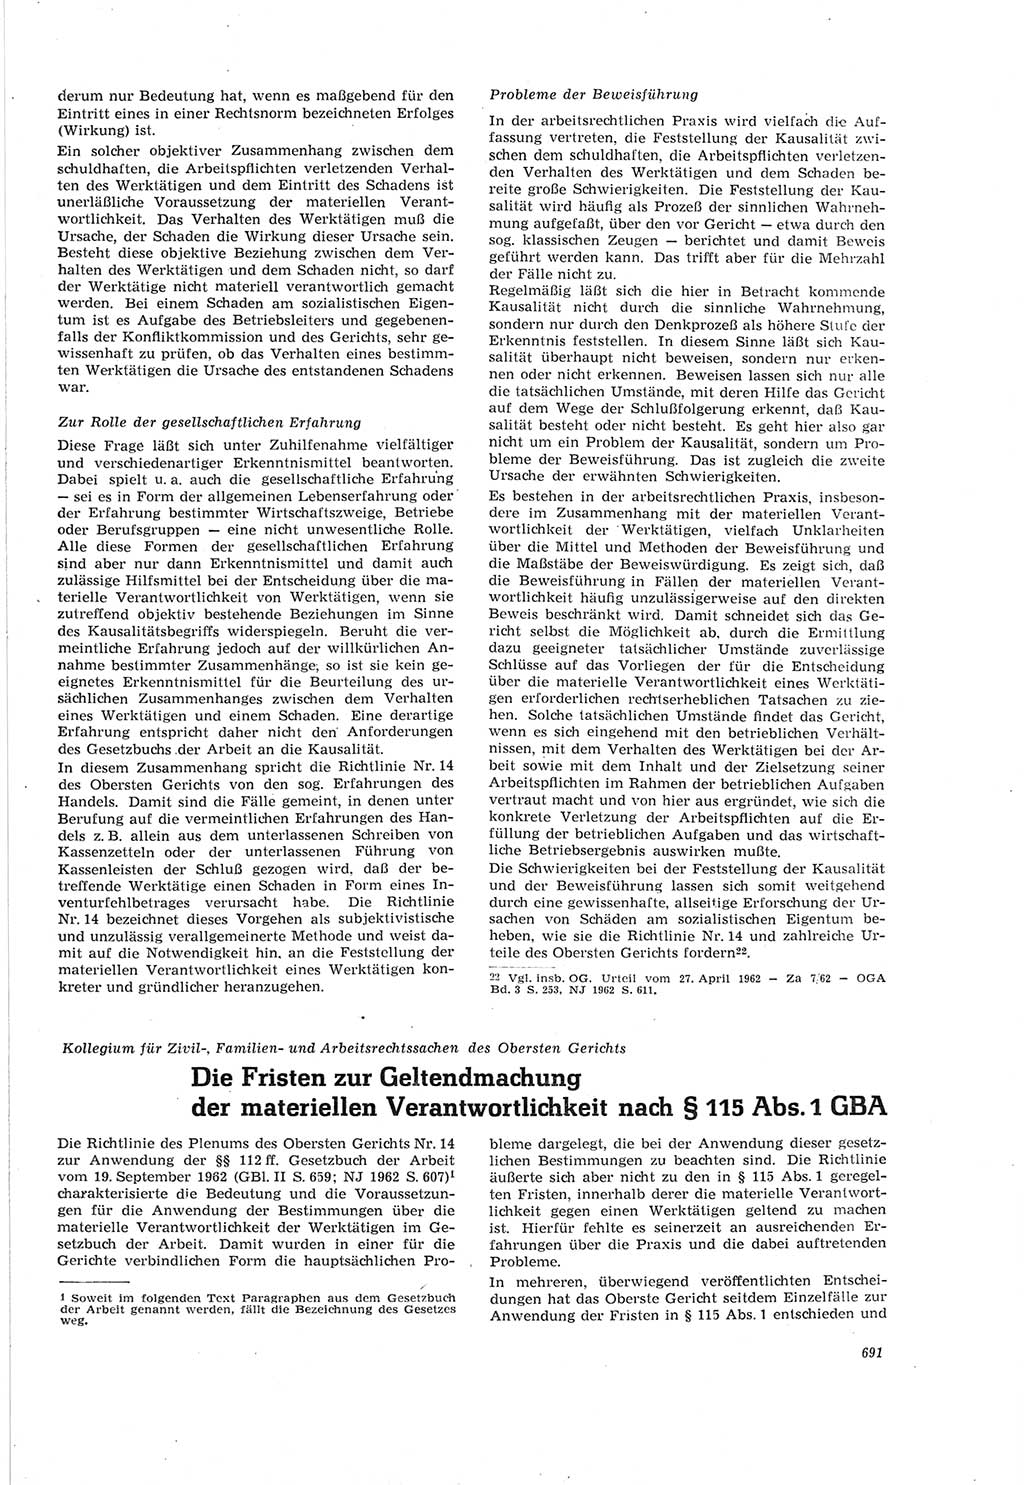 Neue Justiz (NJ), Zeitschrift für Recht und Rechtswissenschaft [Deutsche Demokratische Republik (DDR)], 18. Jahrgang 1964, Seite 691 (NJ DDR 1964, S. 691)